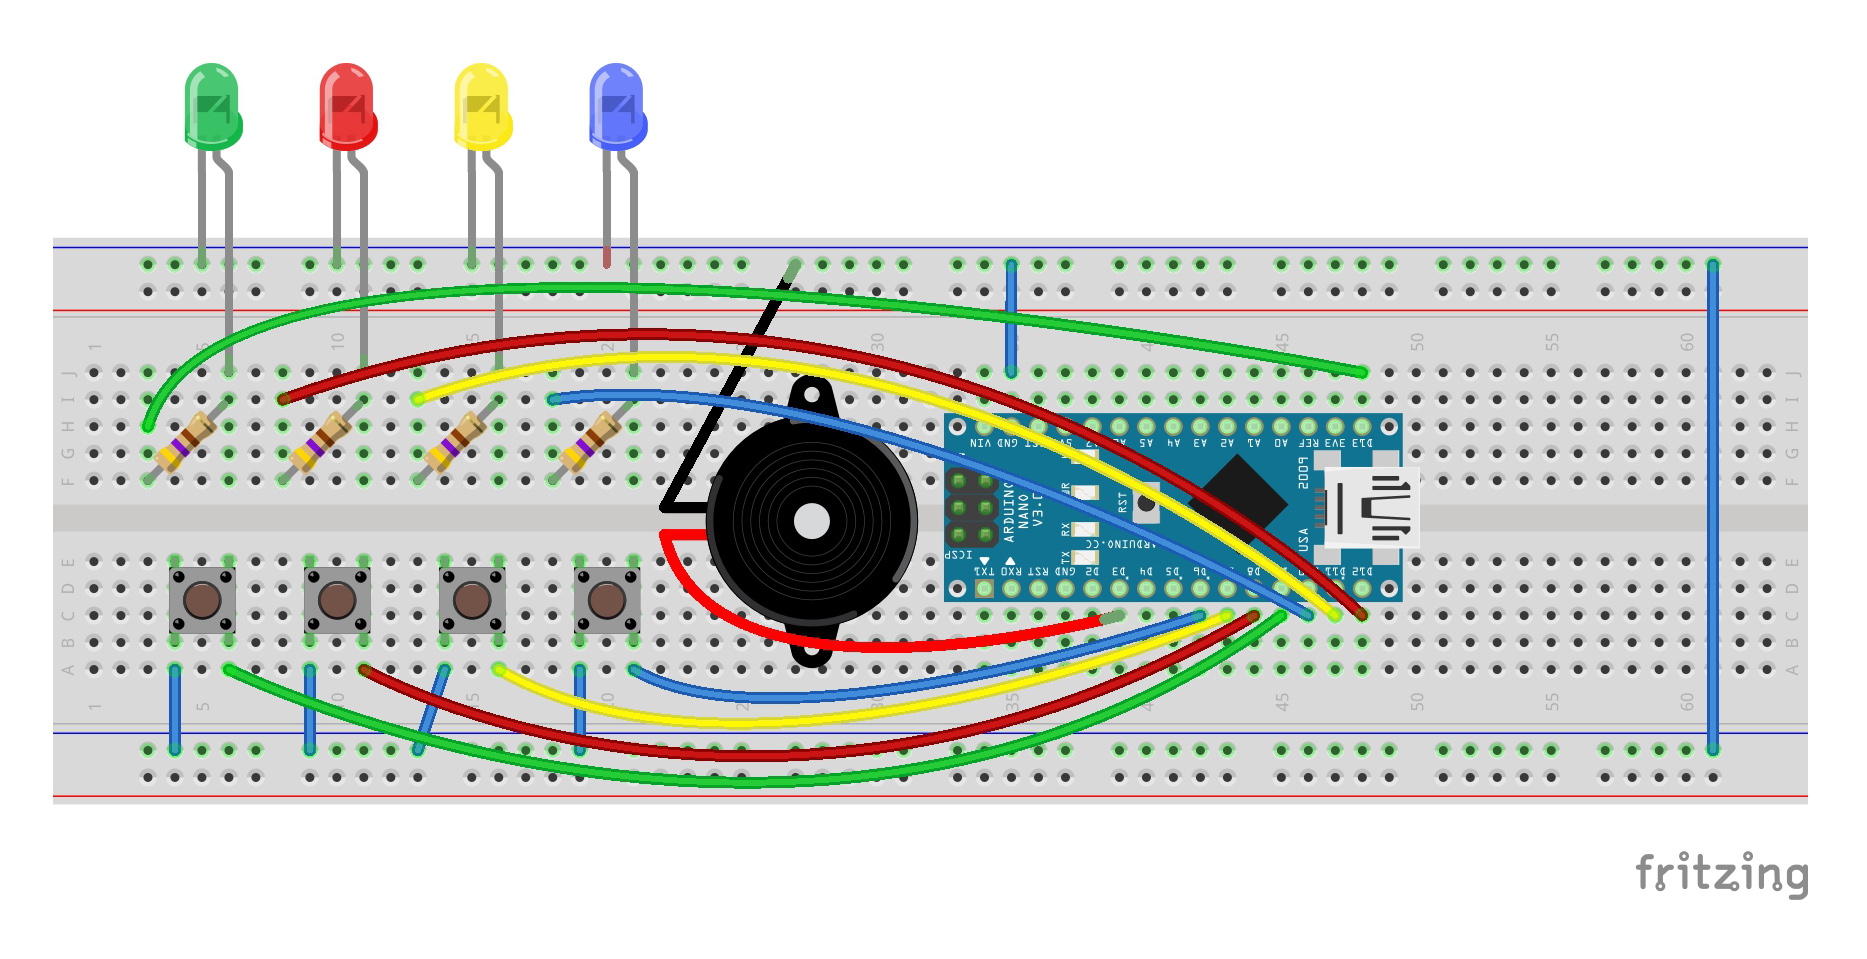 simon says arduino circuit